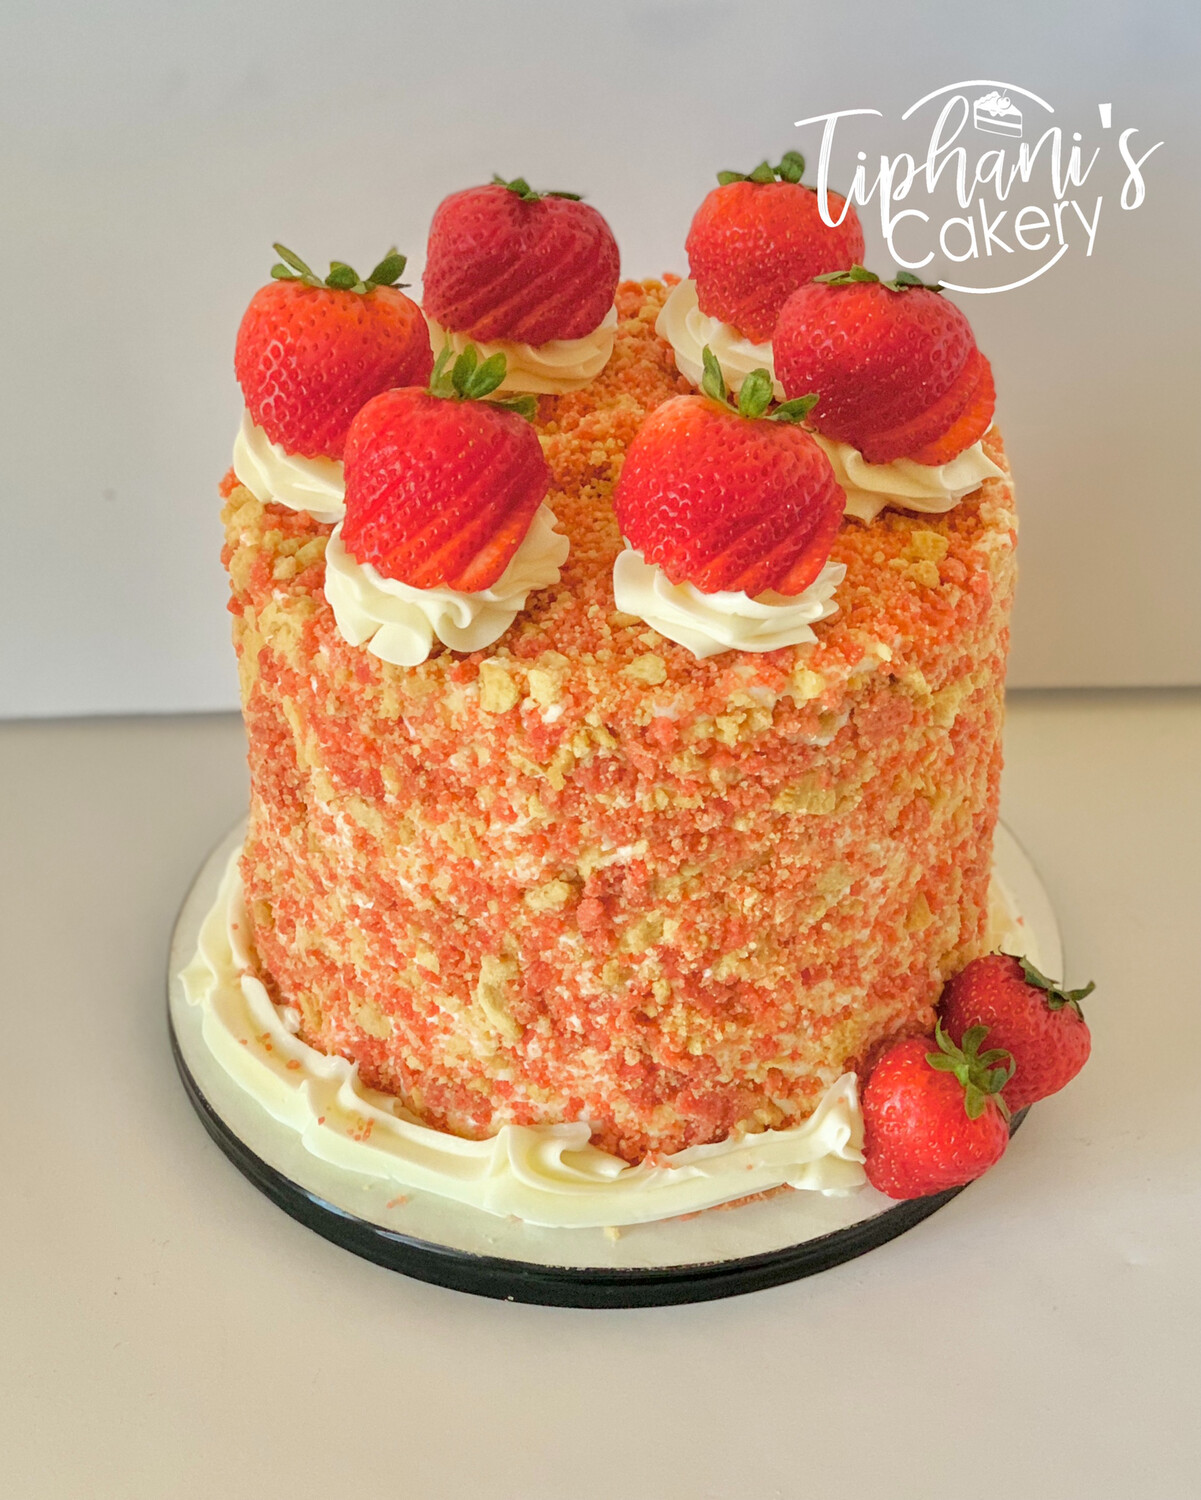 Strawberry “Cheesecake” Cake